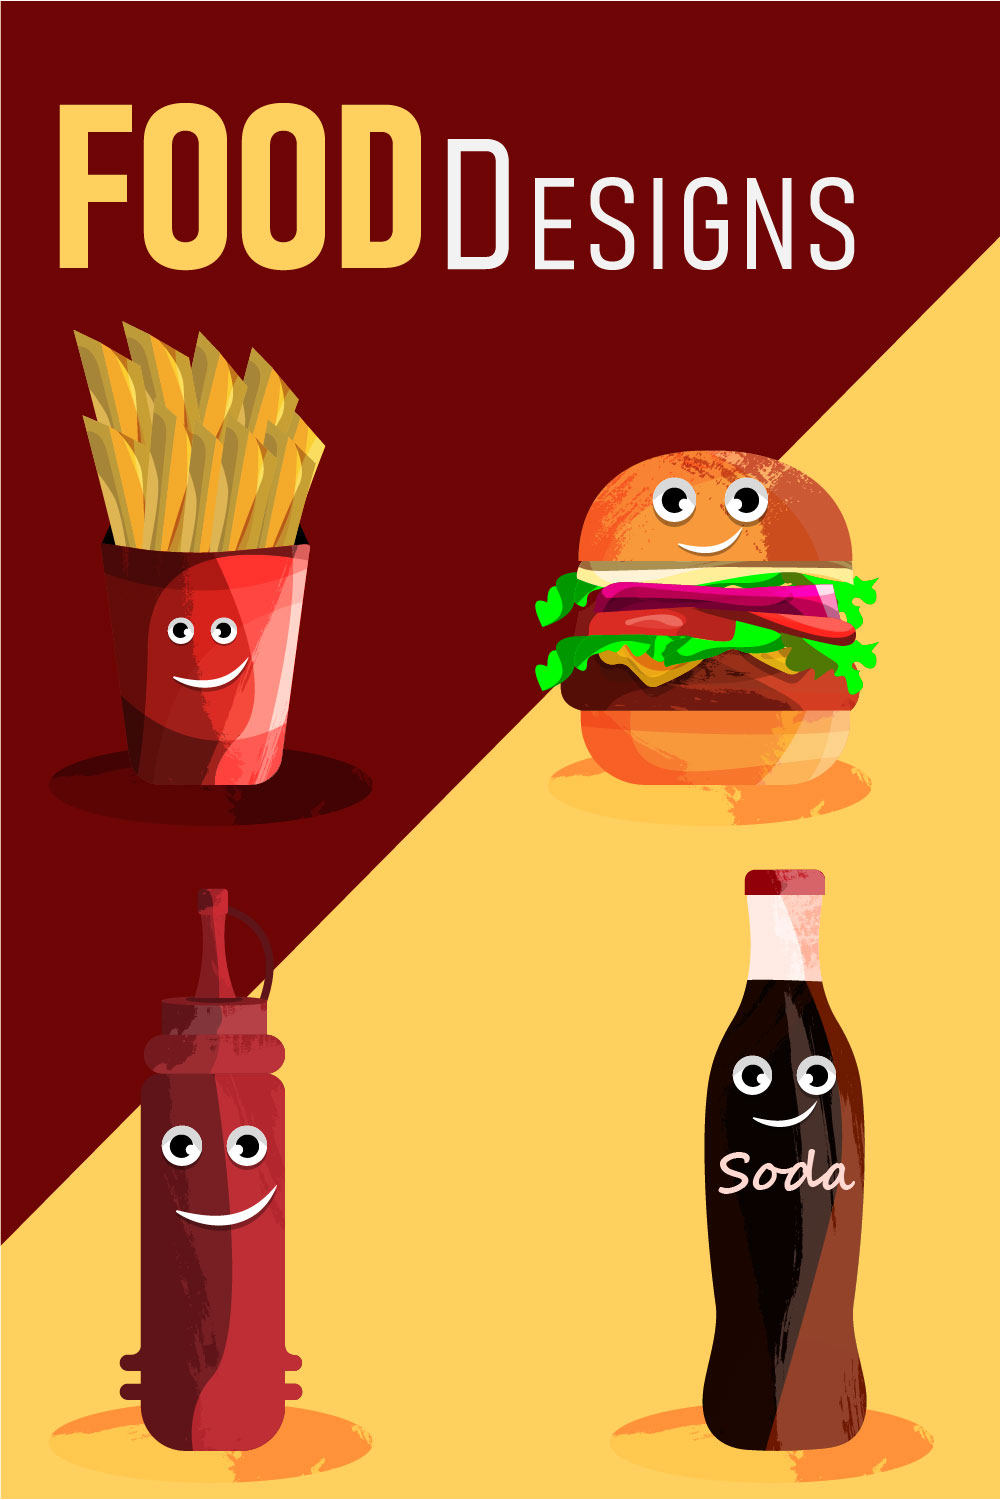 Fast Food Illustrations pinterest image.